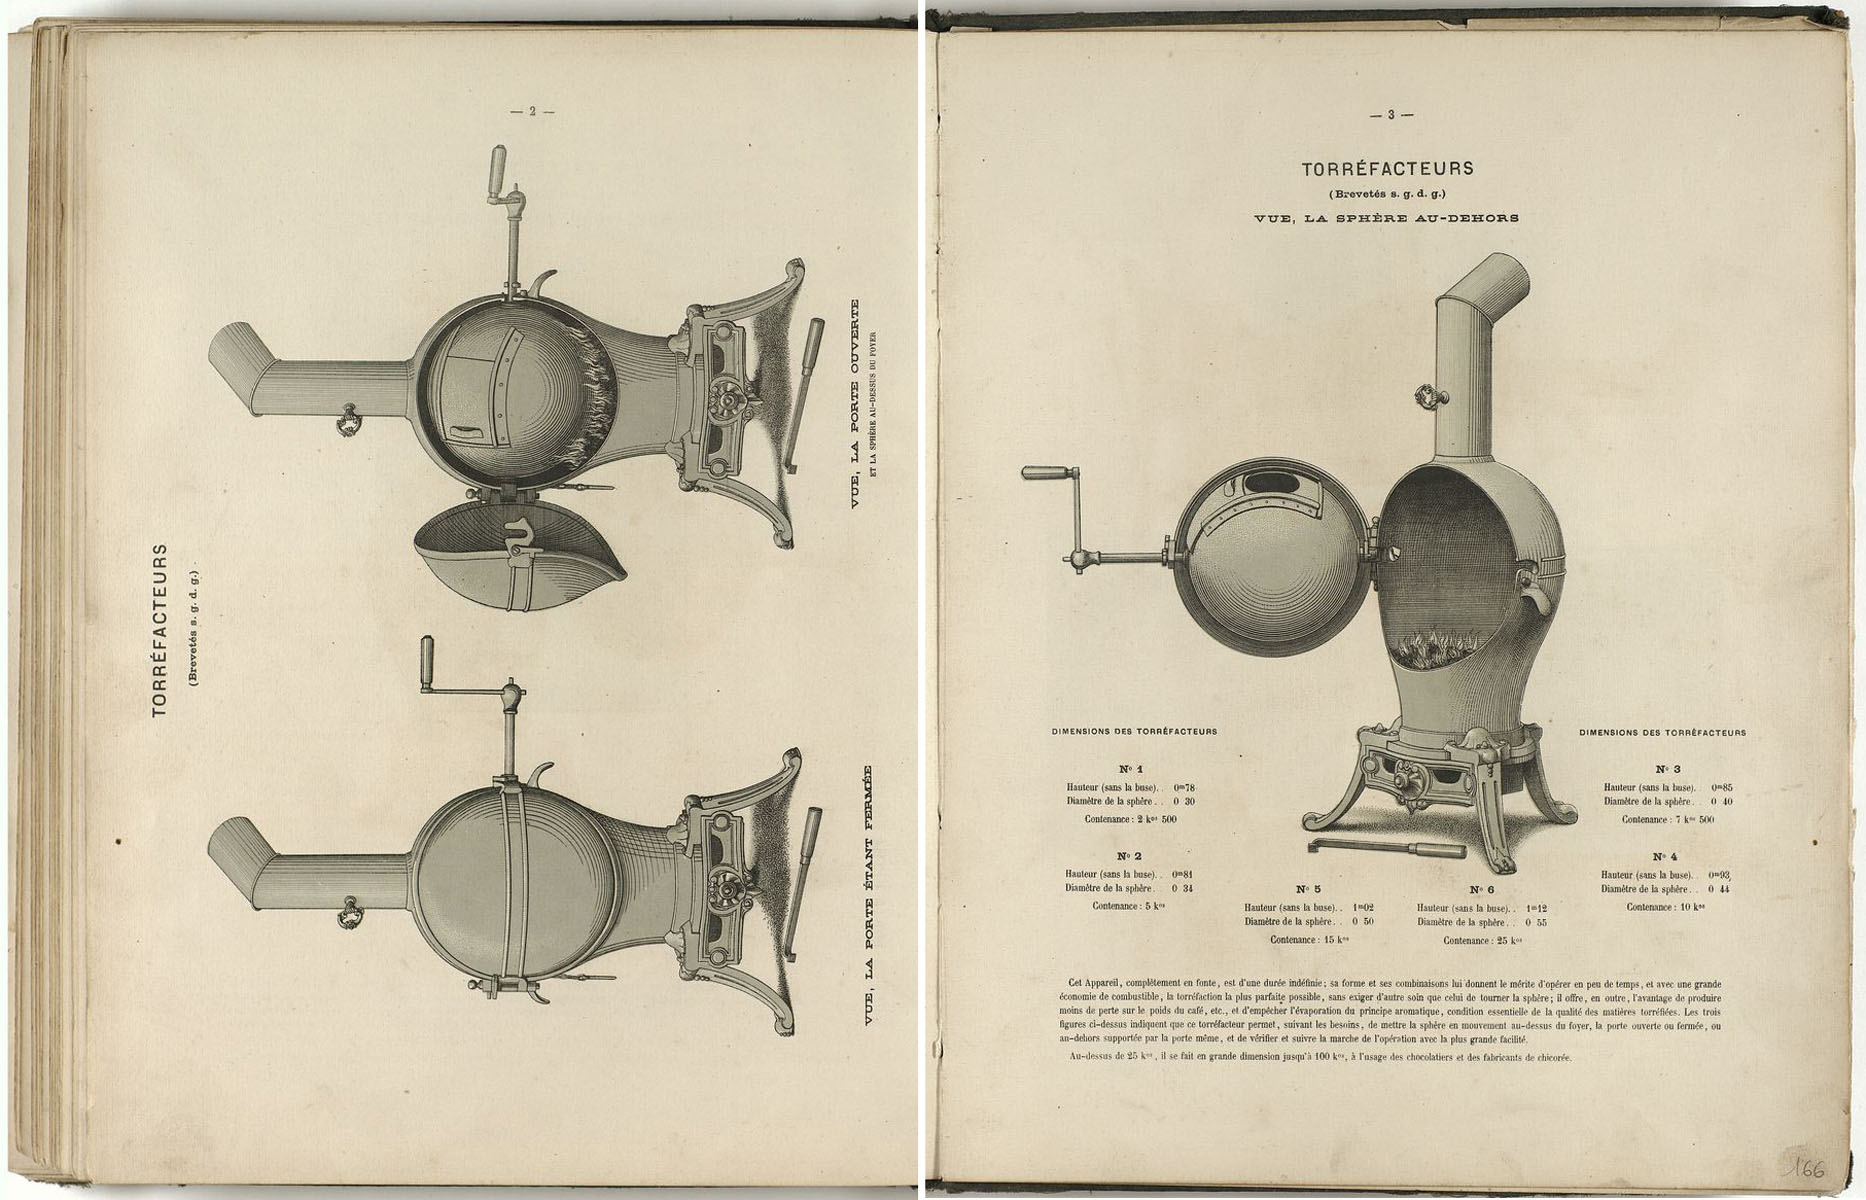 La série des torréfacteurs est présentée dans l’album de 1867 des fonderies et m